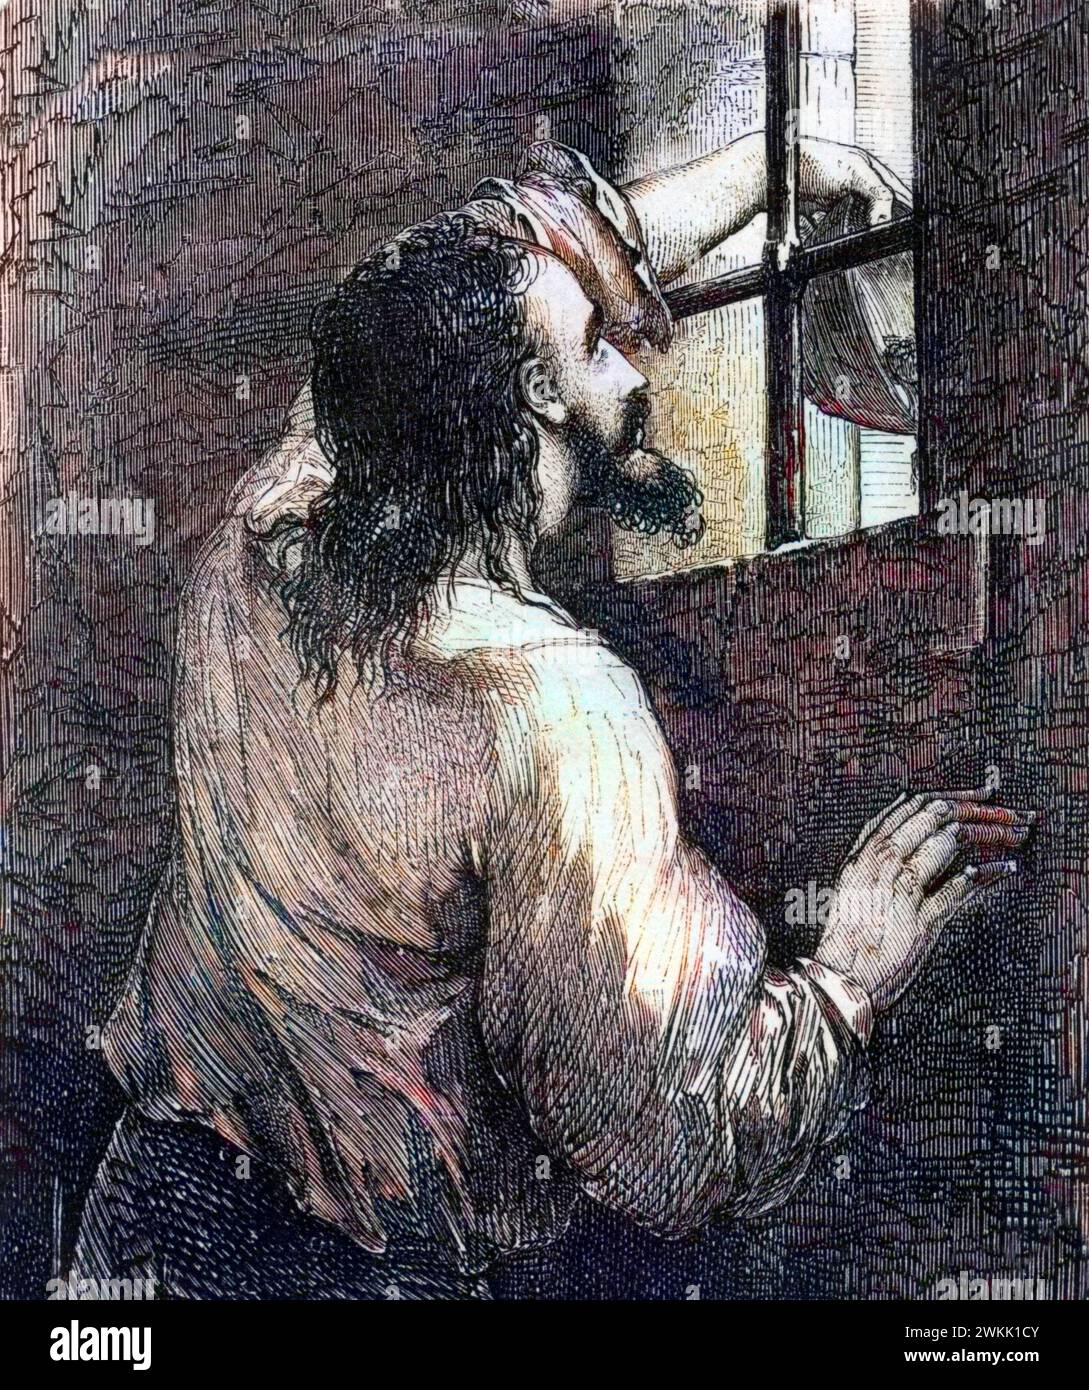 Edmond Dantes, alias Graf von Monte Cristo (Monte Cristo) im Gefängnis - Illustration für den Grafen von Monte Cristo, Roman von Alexandre Dumas (1802–1870) Stockfoto